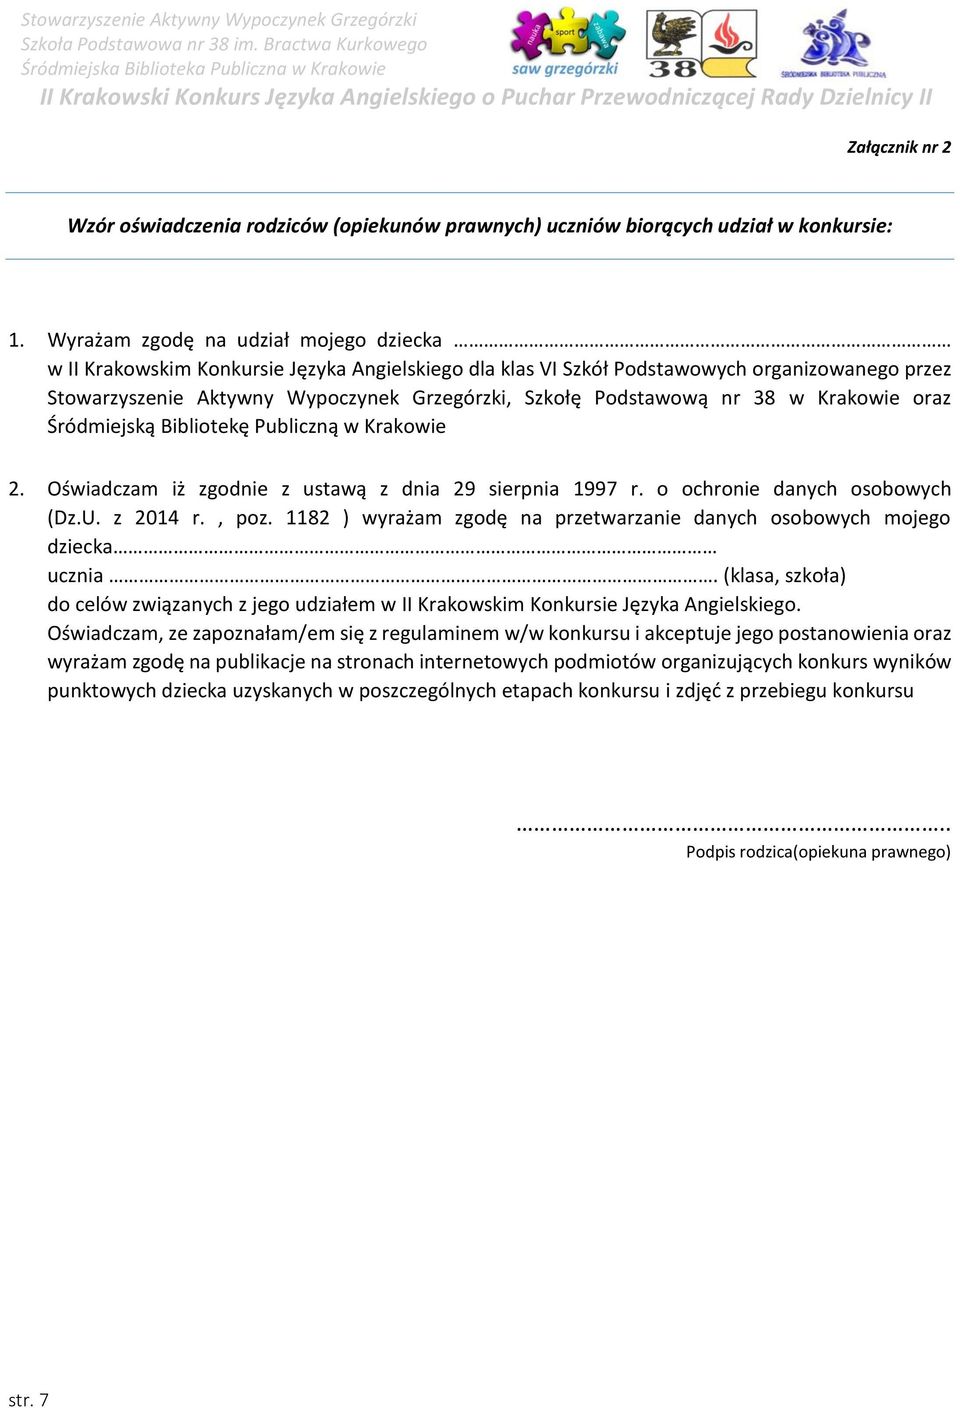 Podstawową nr 38 w Krakowie oraz Śródmiejską Bibliotekę Publiczną w Krakowie 2. Oświadczam iż zgodnie z ustawą z dnia 29 sierpnia 1997 r. o ochronie danych osobowych (Dz.U. z 2014 r., poz.